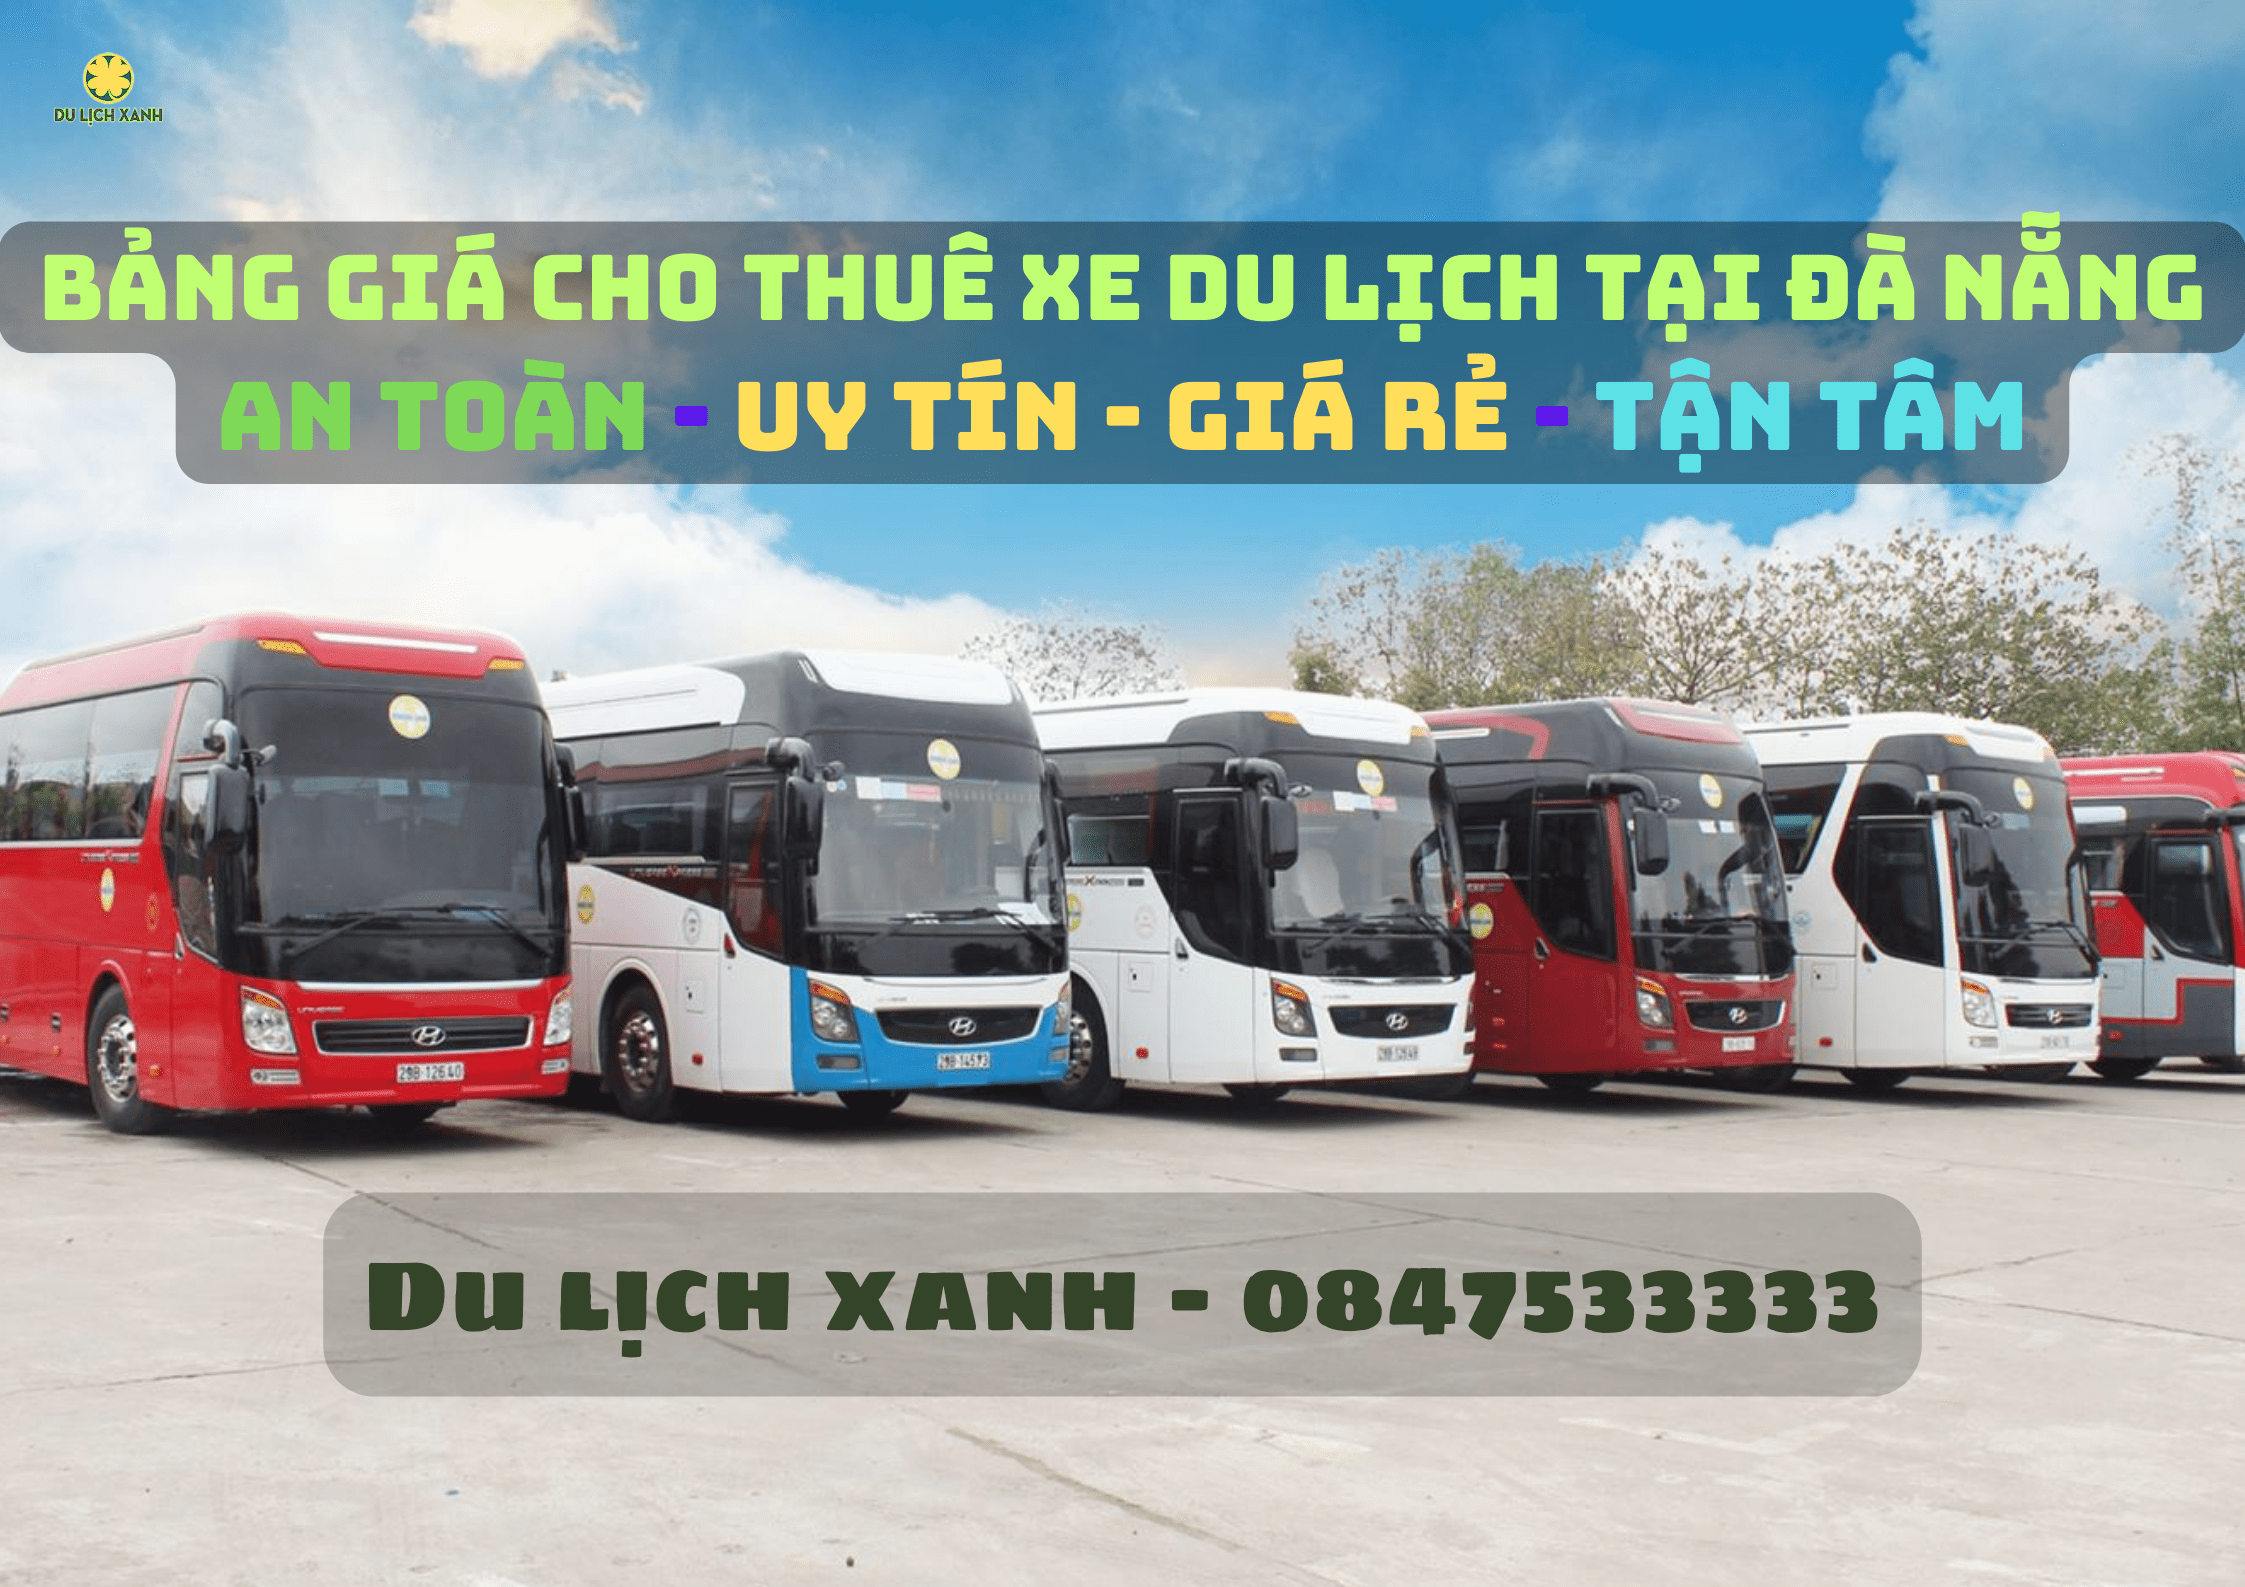 Bảng giá cho thuê xe du lịch Đà Nẵng